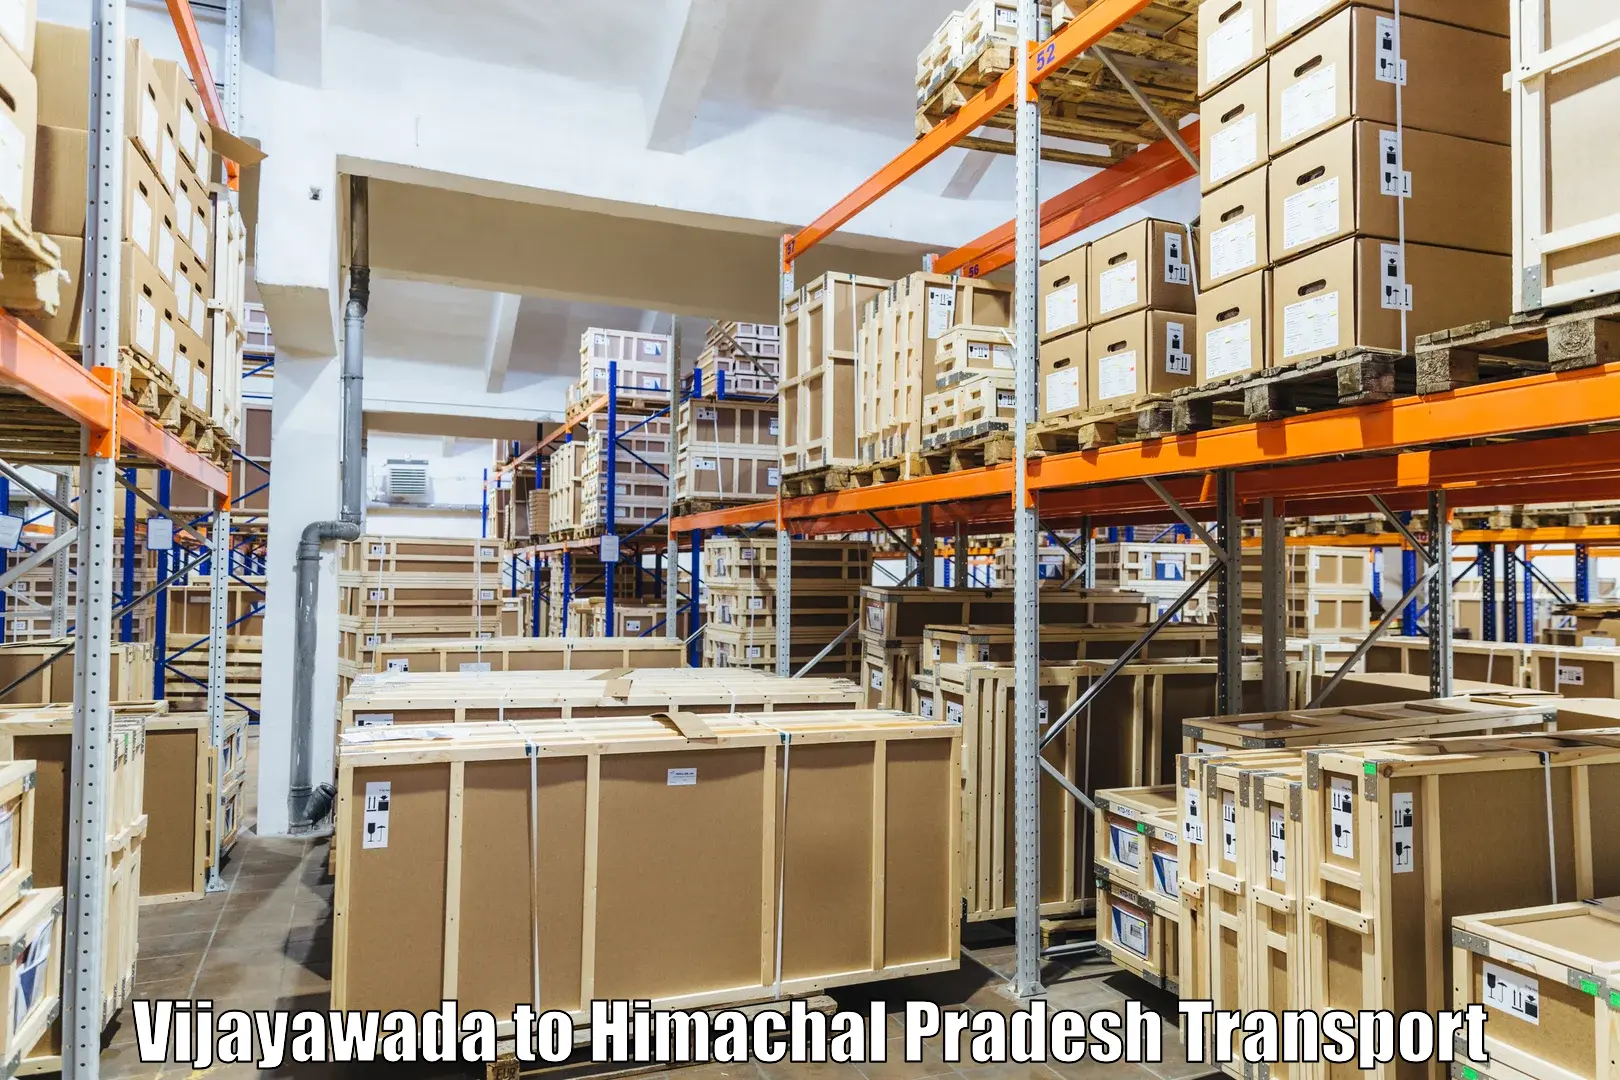 Air freight transport services Vijayawada to Kandaghat